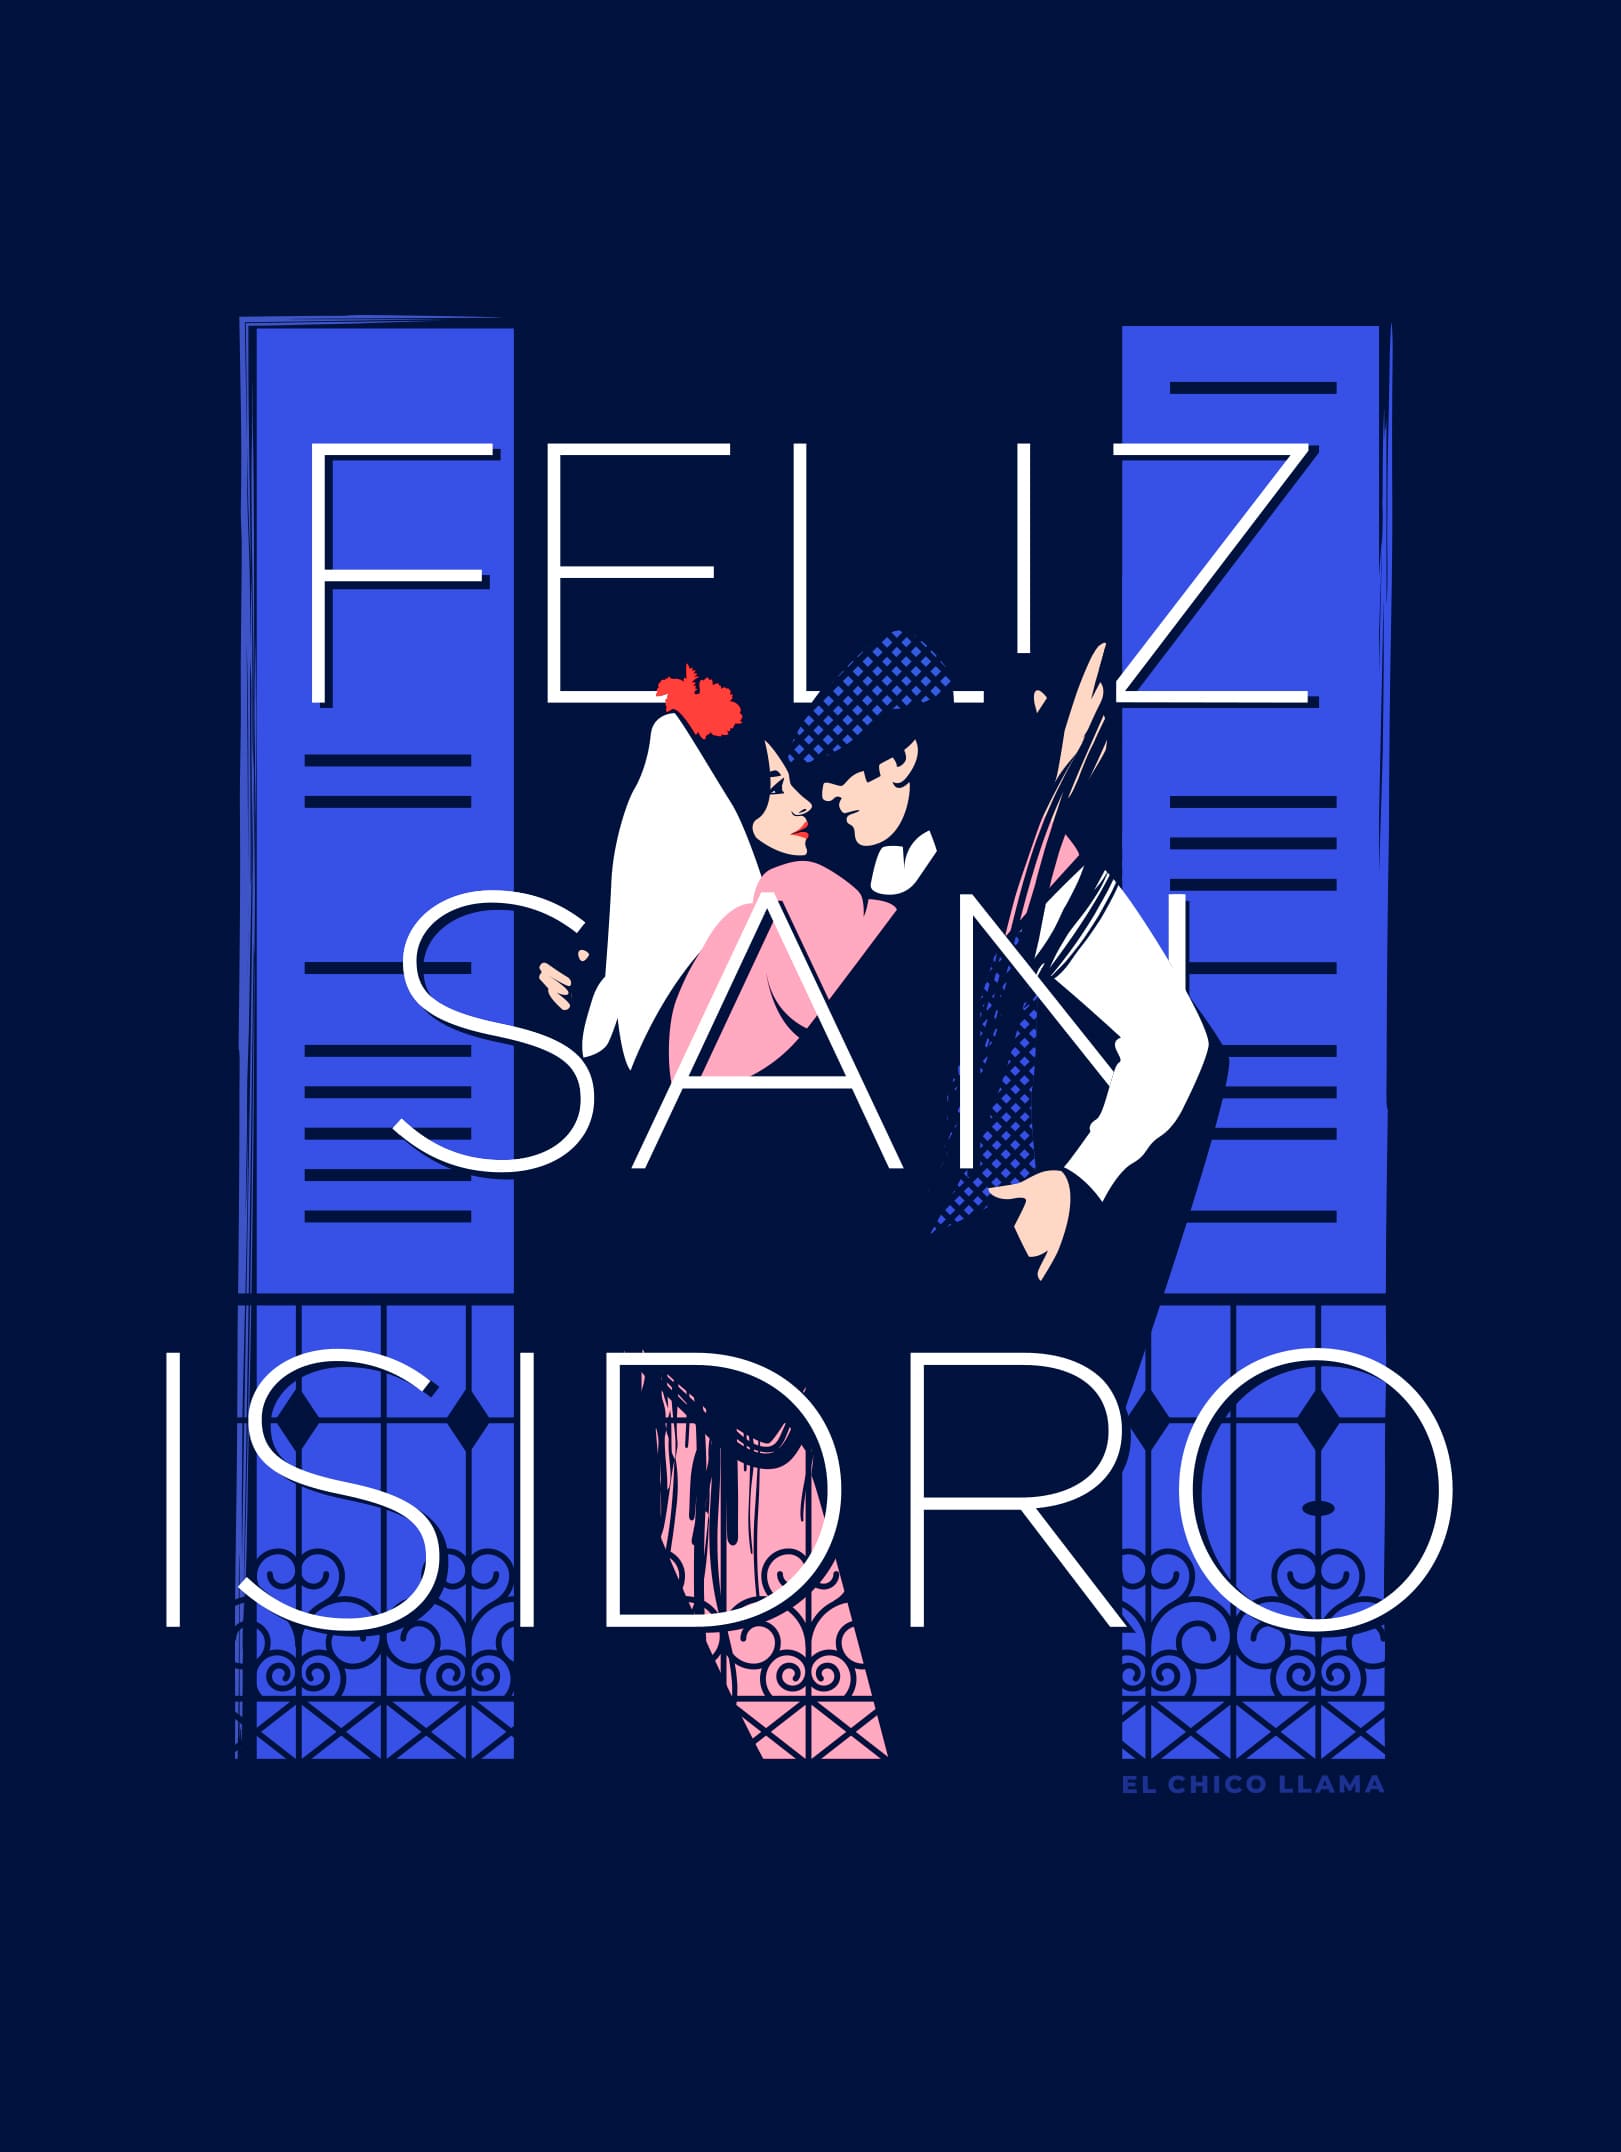 San Isidro 2020 Poster - El Chico Llama